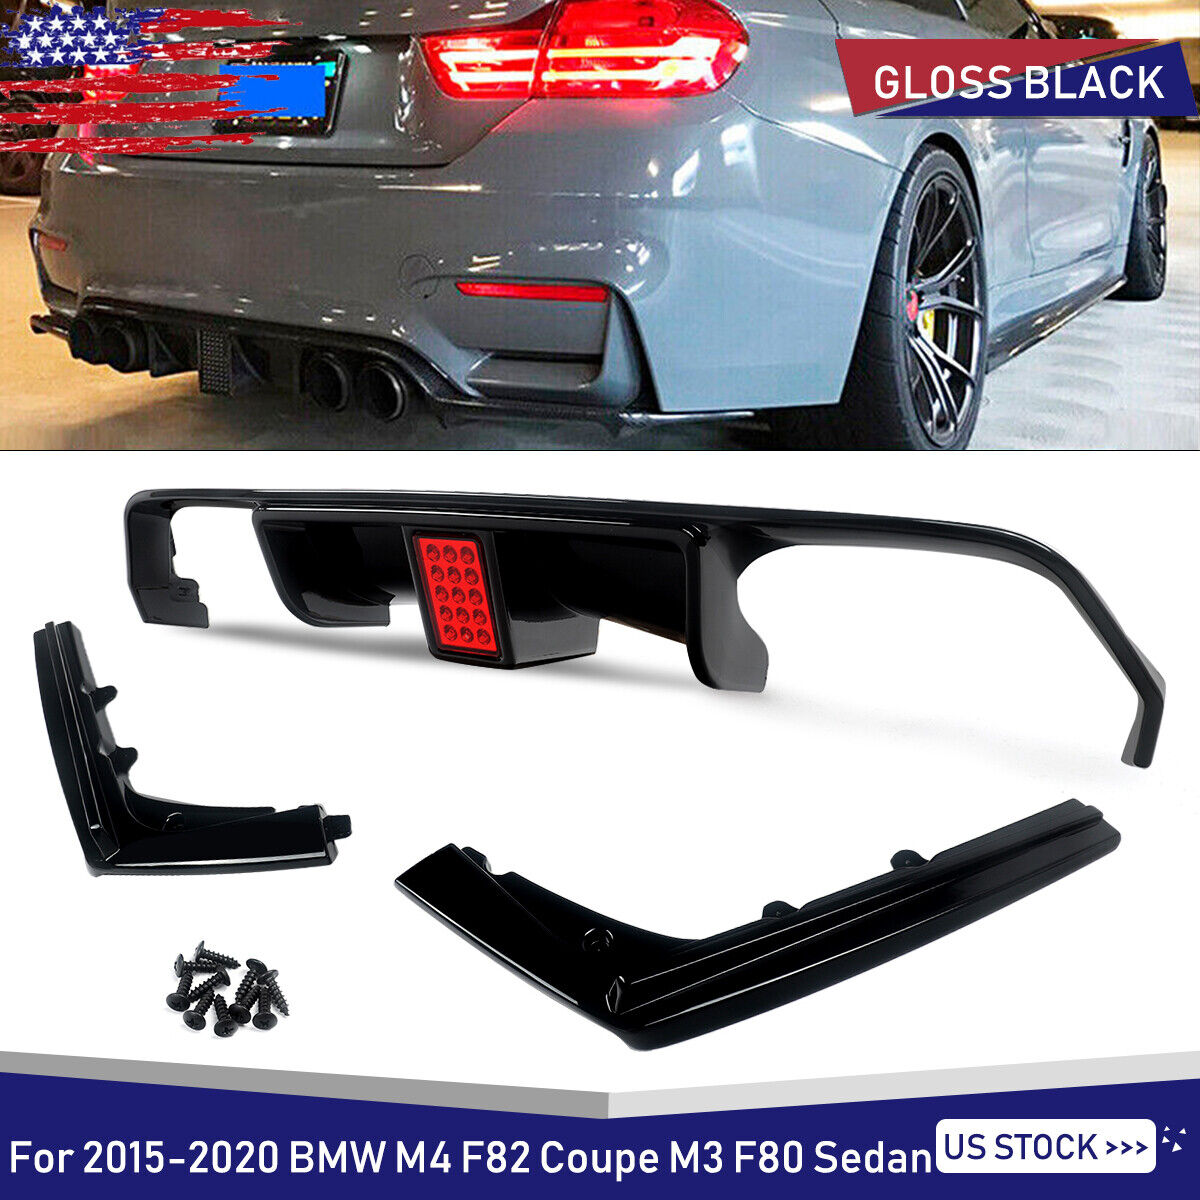 For 2015-2020 BMW M3 M4 F80 F82 F83 Rear Diffuser Lip W/ LED Light Gloss Black